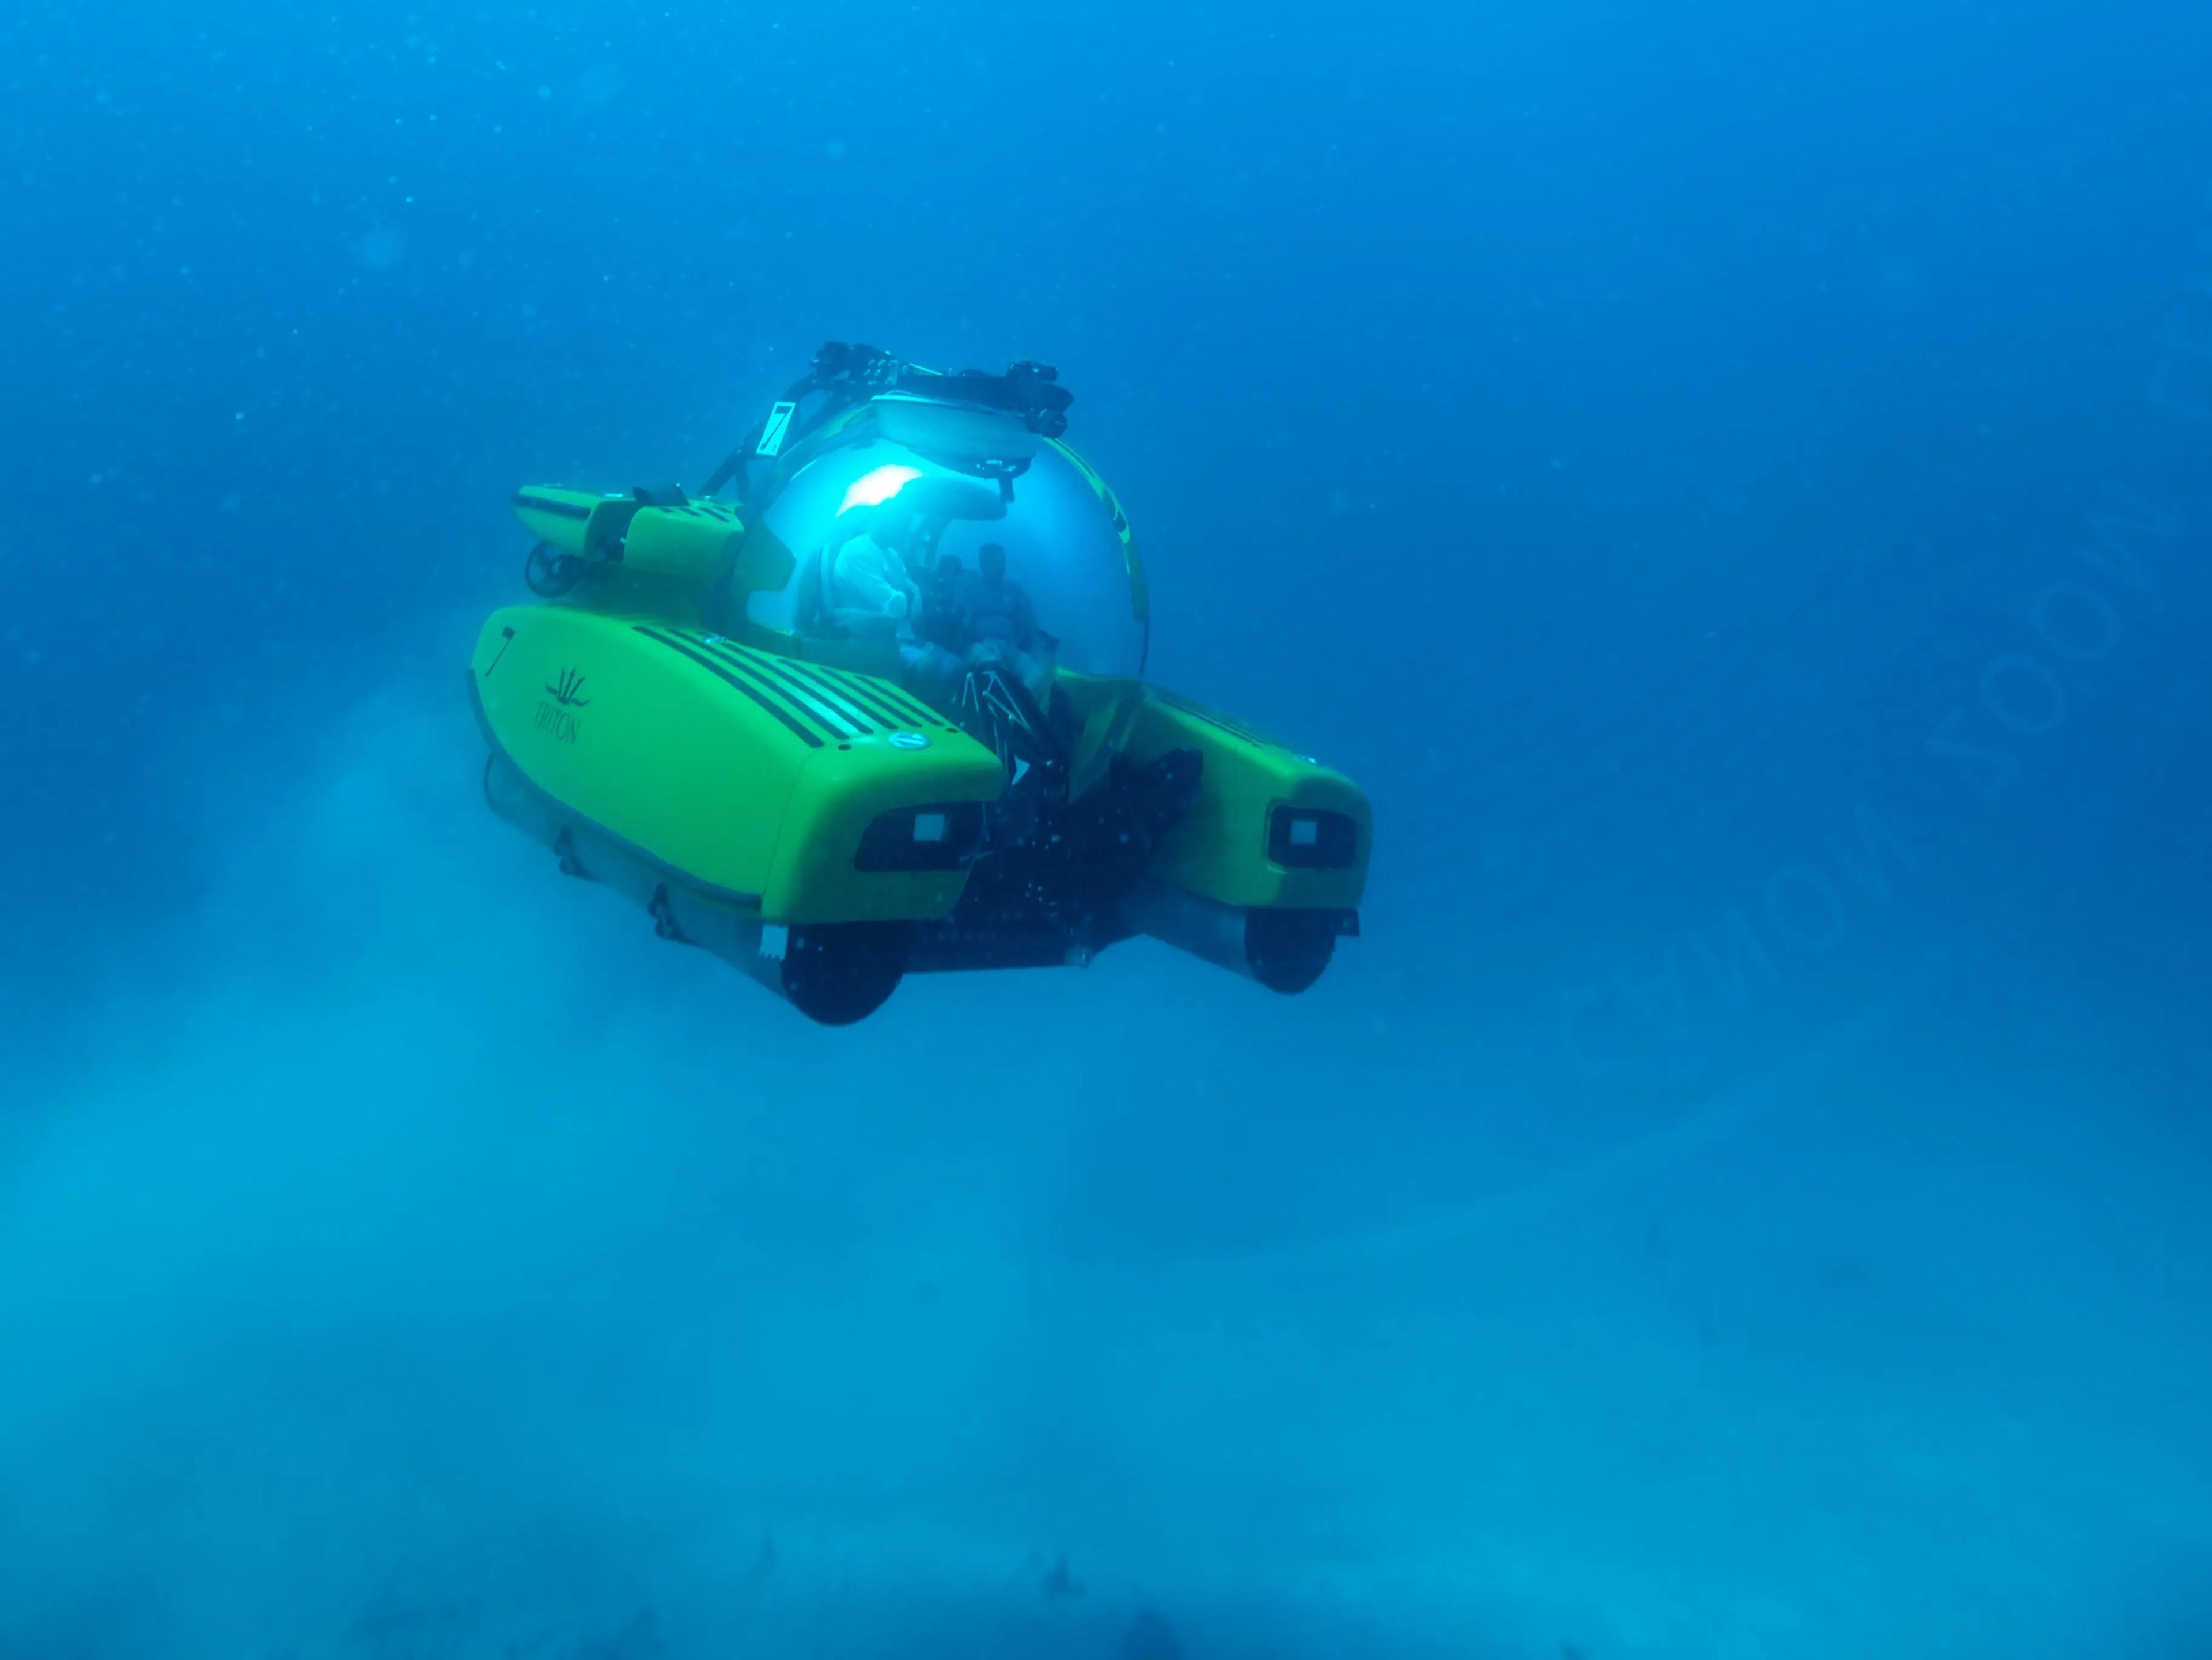 A Triton Submersible exploring the ocean.